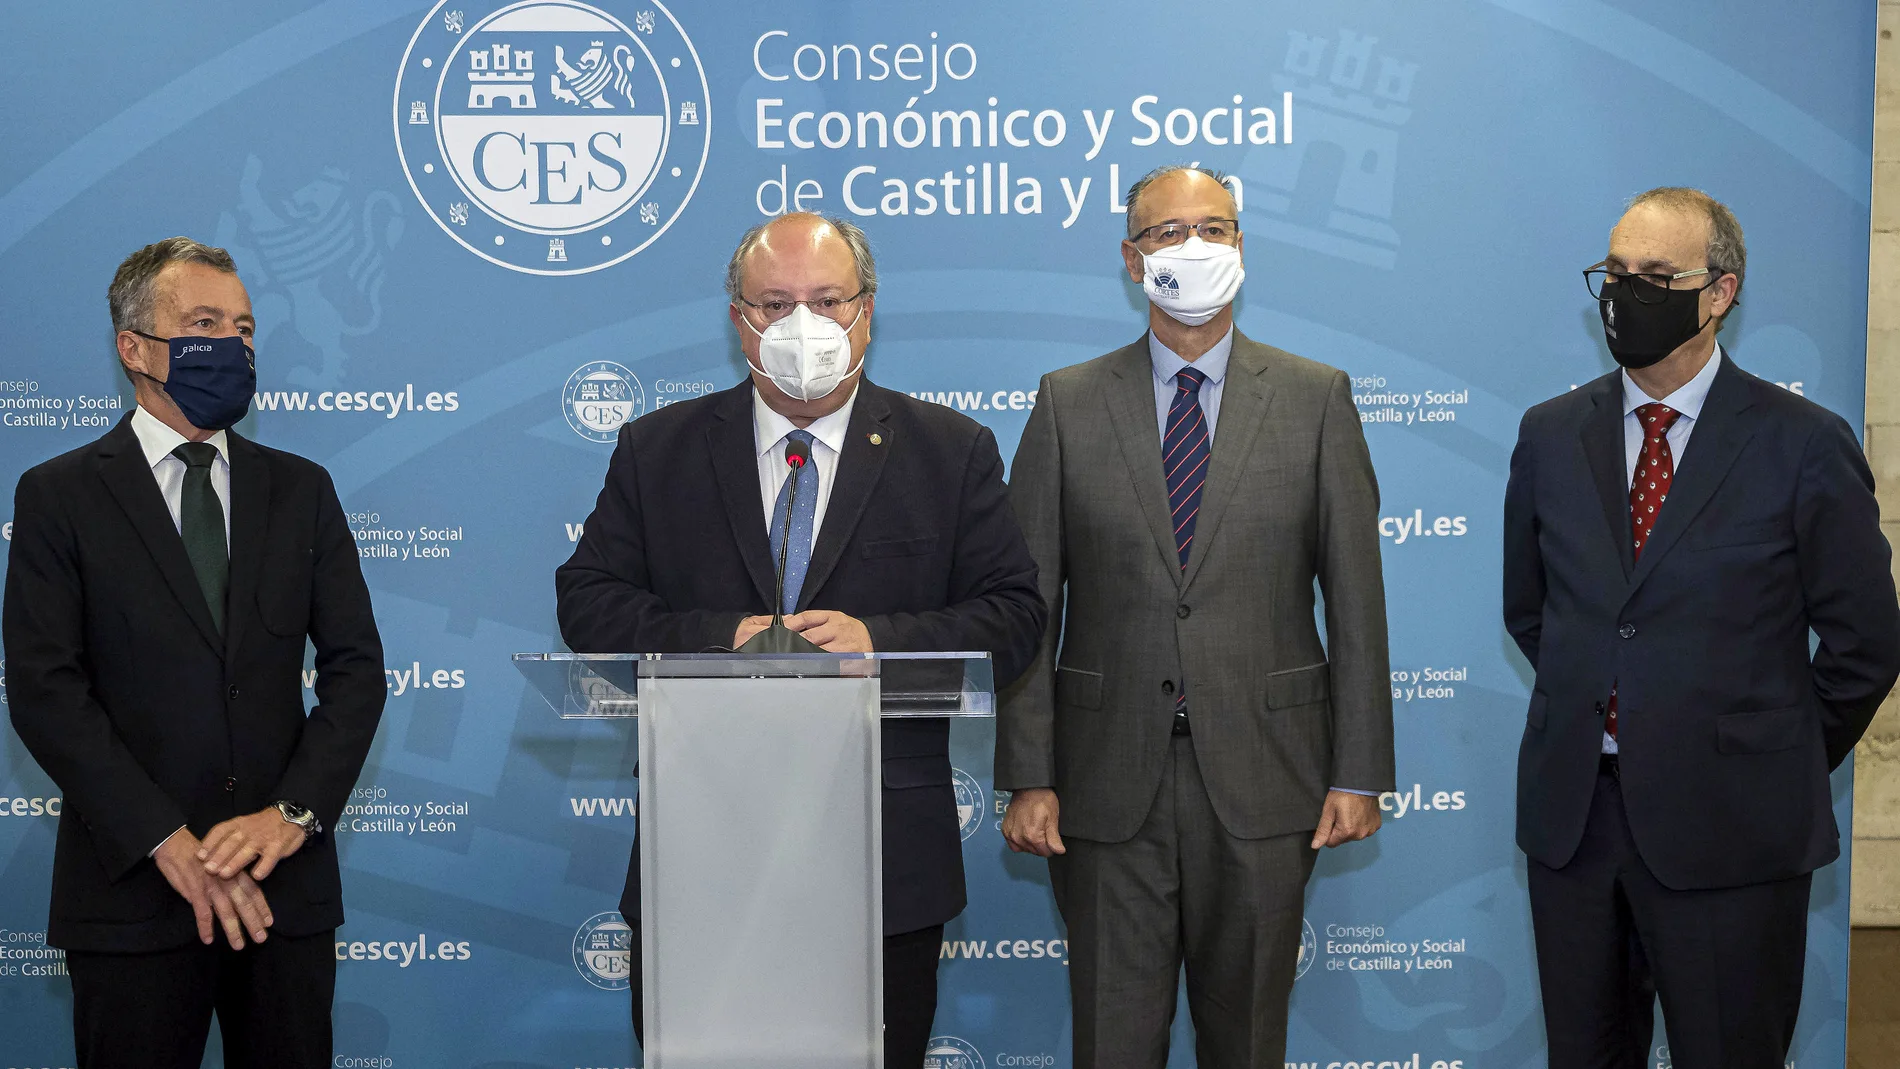 El presidente de las Cortes de Castilla y León, Luis Fuentes, y el del CES, Enrique Cabero, participan en una jornada con motivo del 30 aniversario de la institución